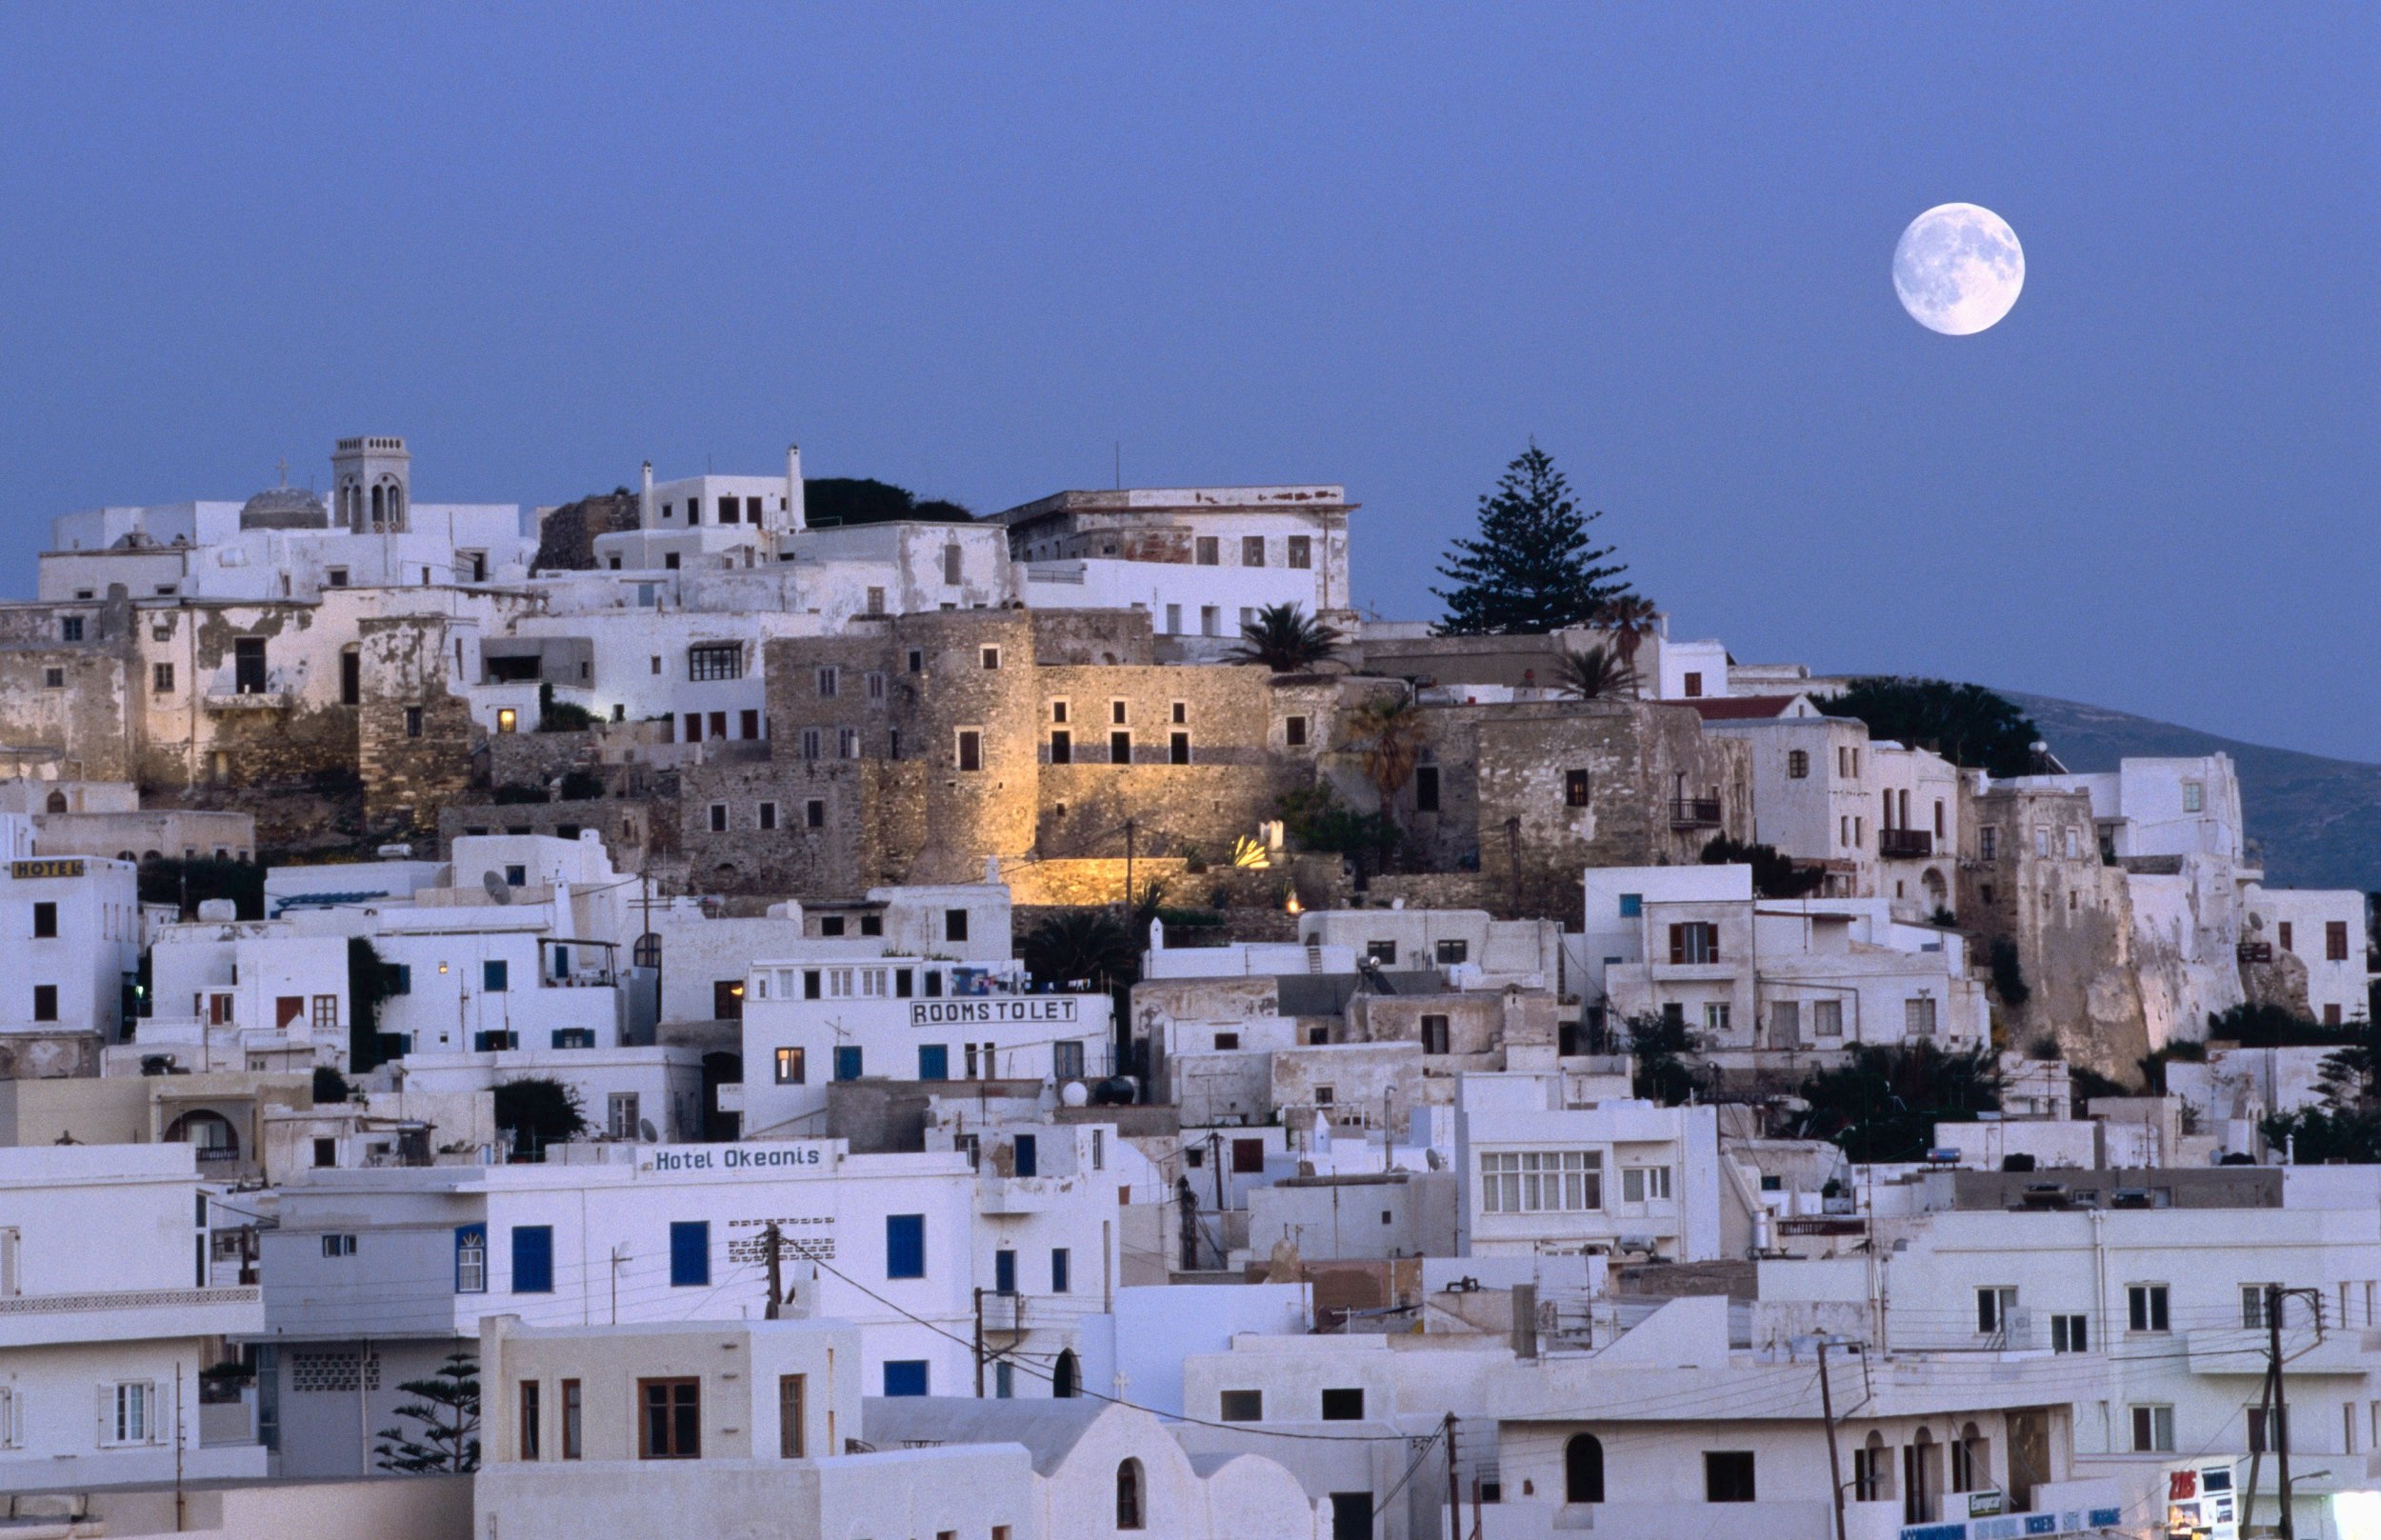 En fullmåne över en stad med vita byggnader packade ihop på en sluttning.  En slottsstruktur sitter i mitten.